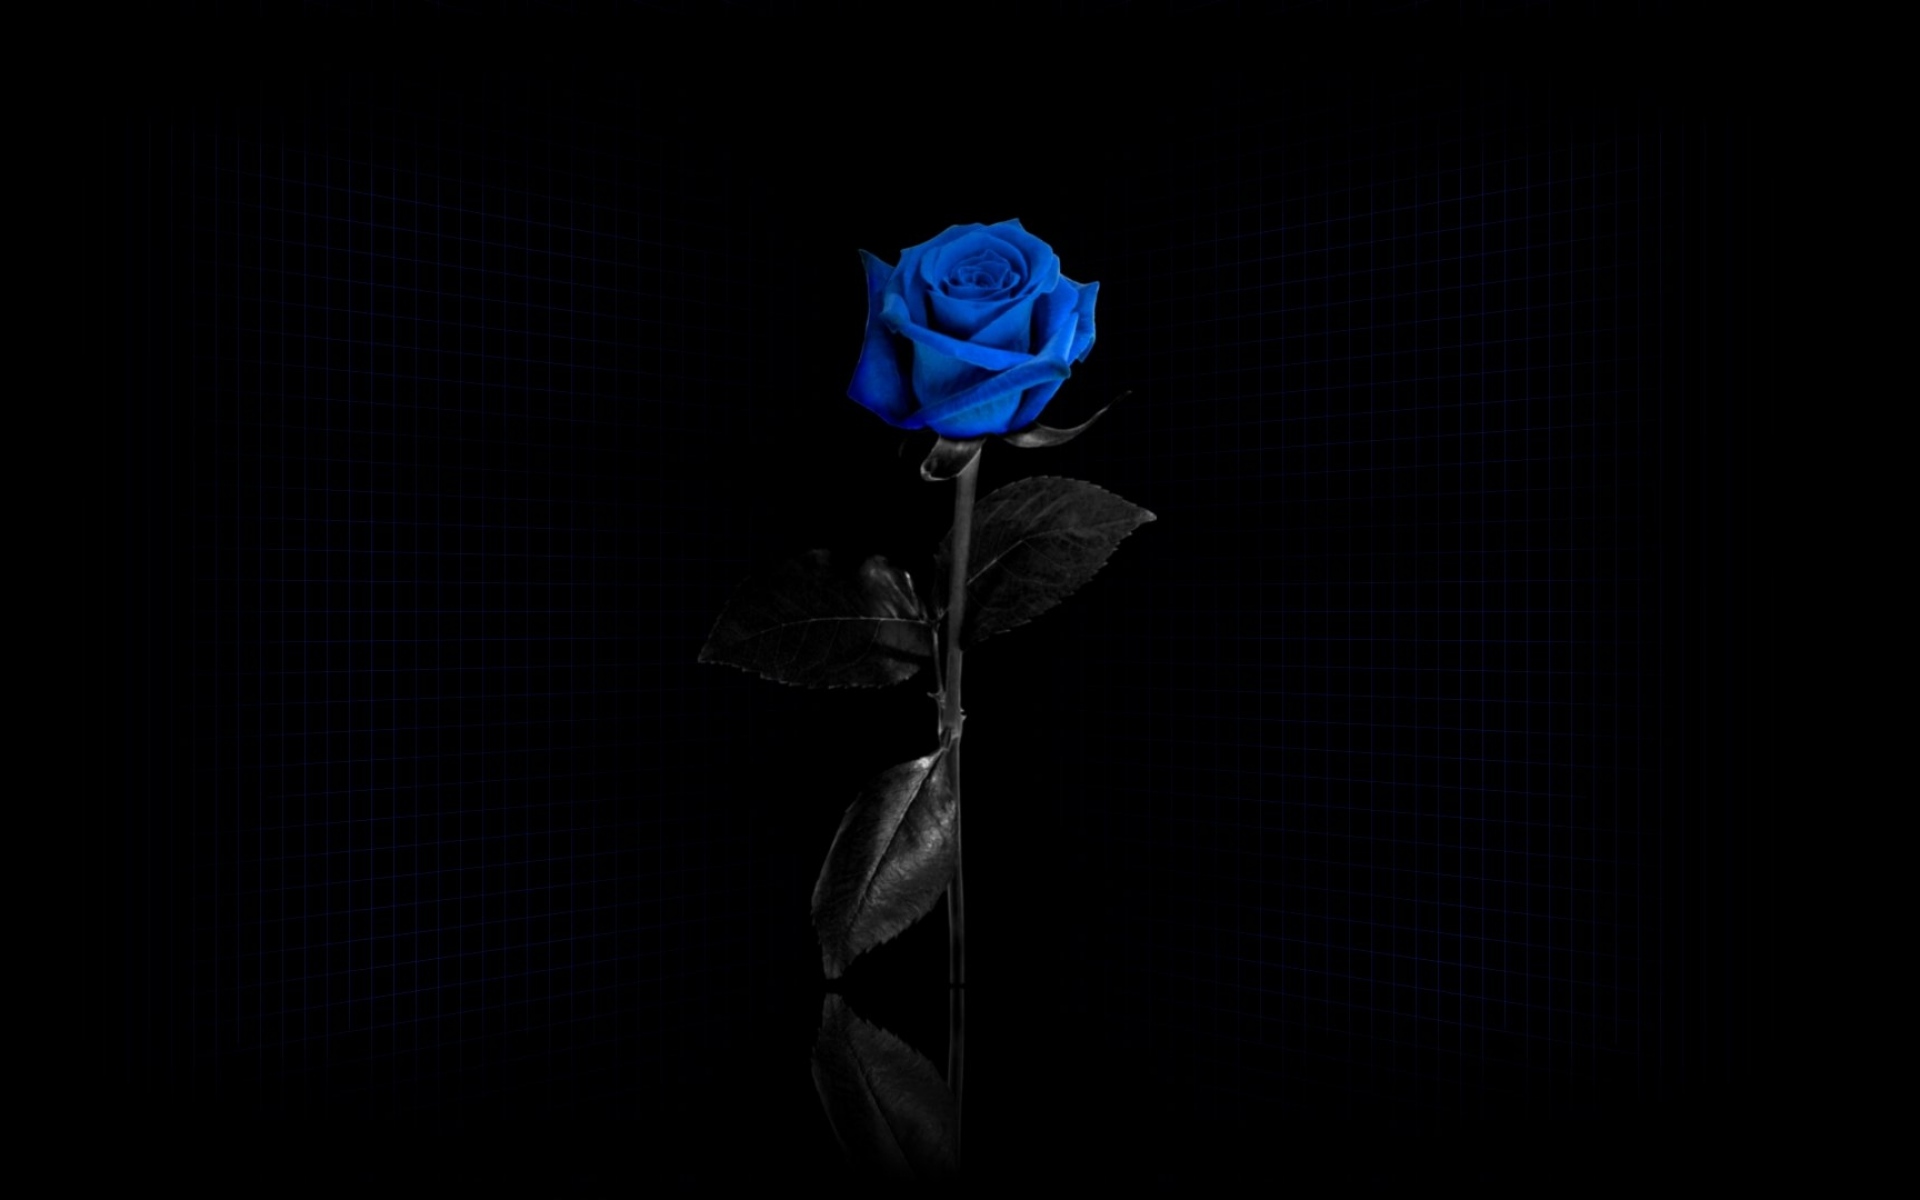 Заставка черный фон. Синяя роза на черном фоне. Черный фон на рабочий стол. Черная заставка на рабочий стол. Черная роза на черном фоне.